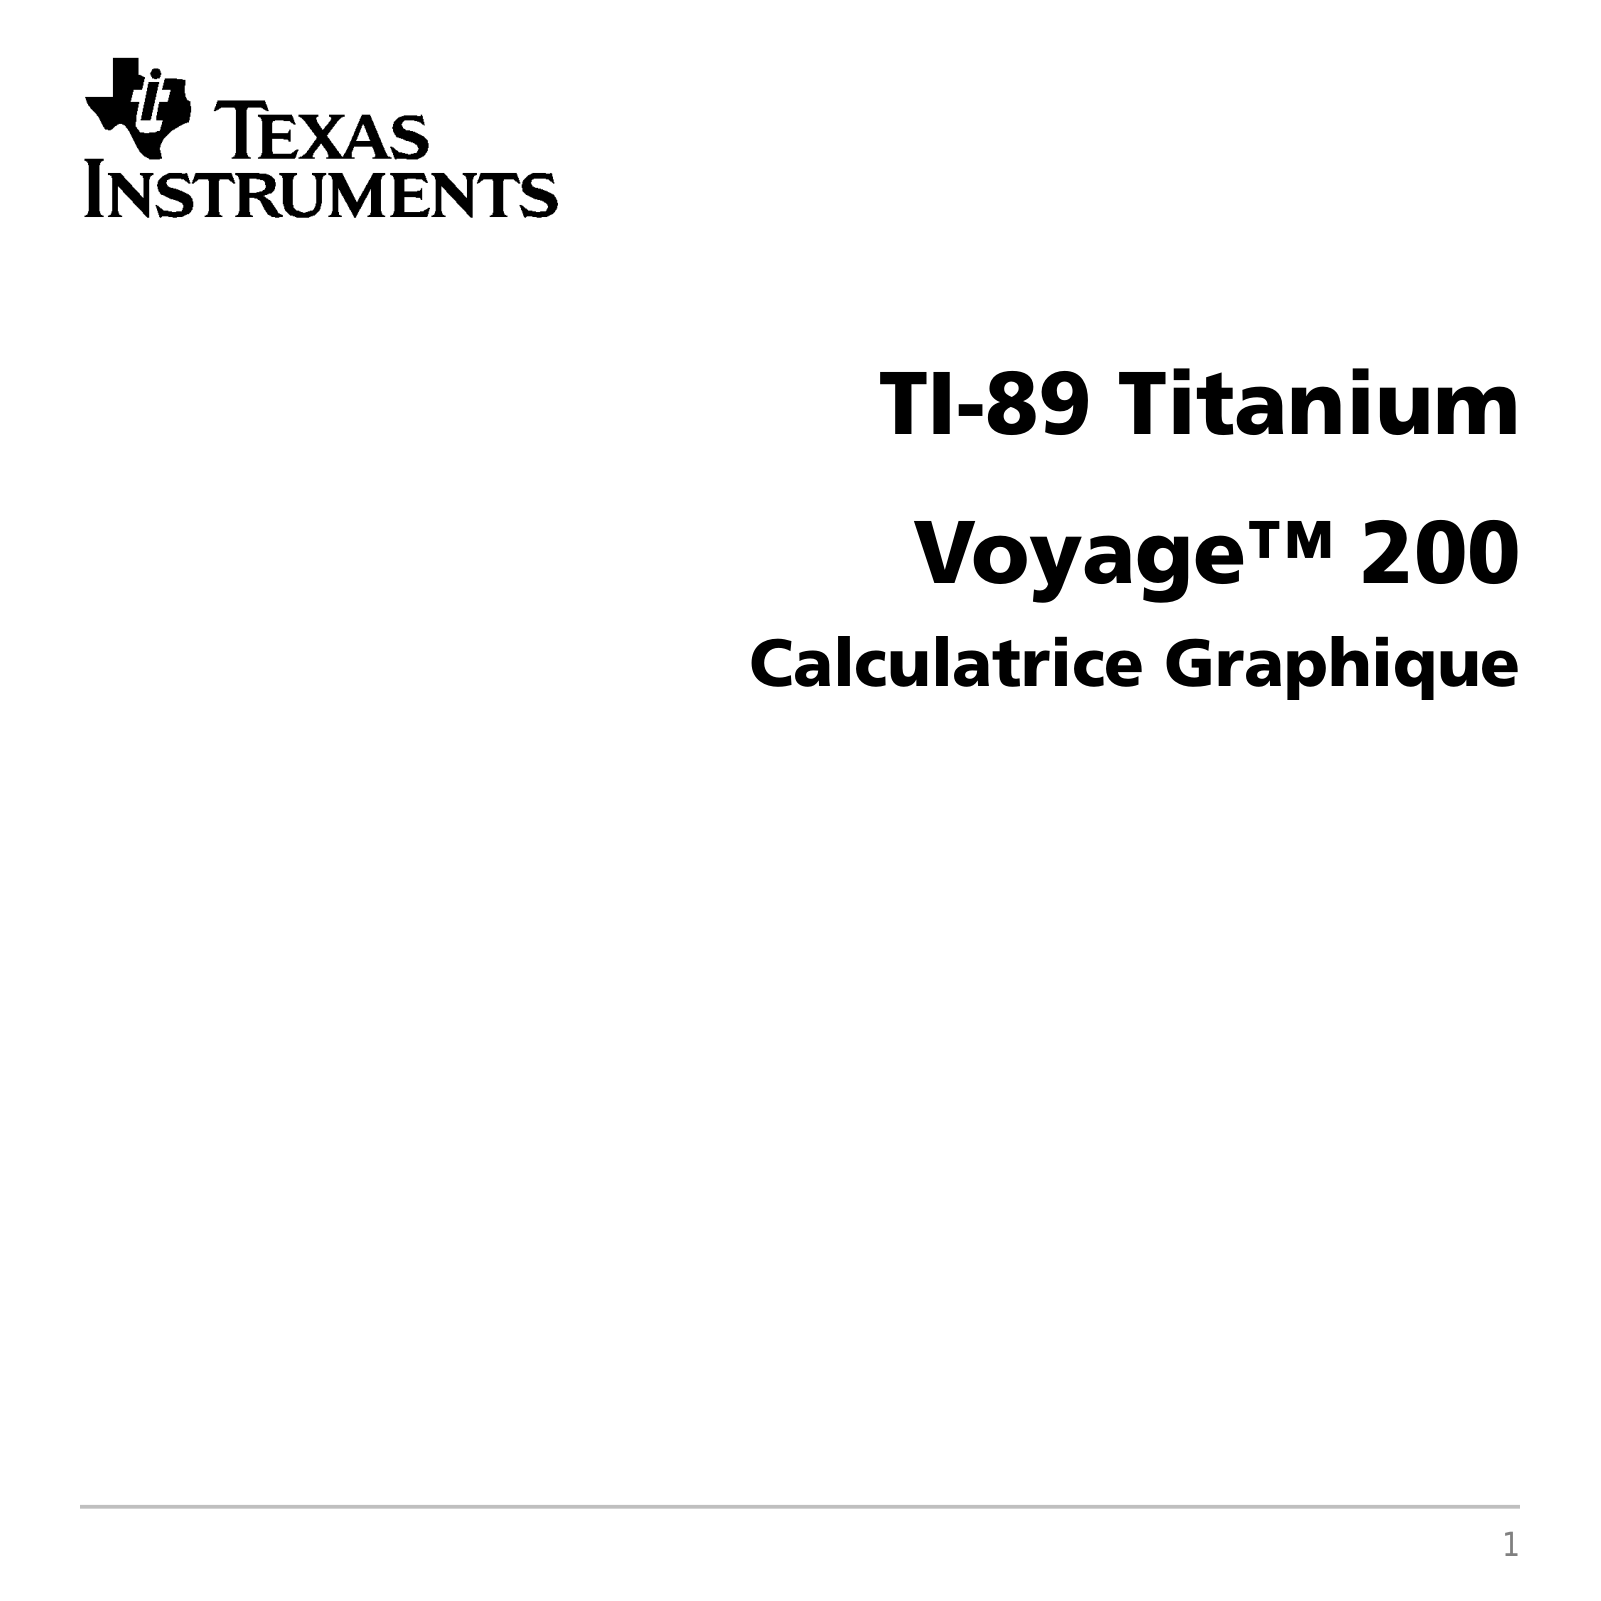 Texas instruments TI-89 Titanium Calculatrice Graphique, Voyage 200 Calculatrice Graphique User Manual